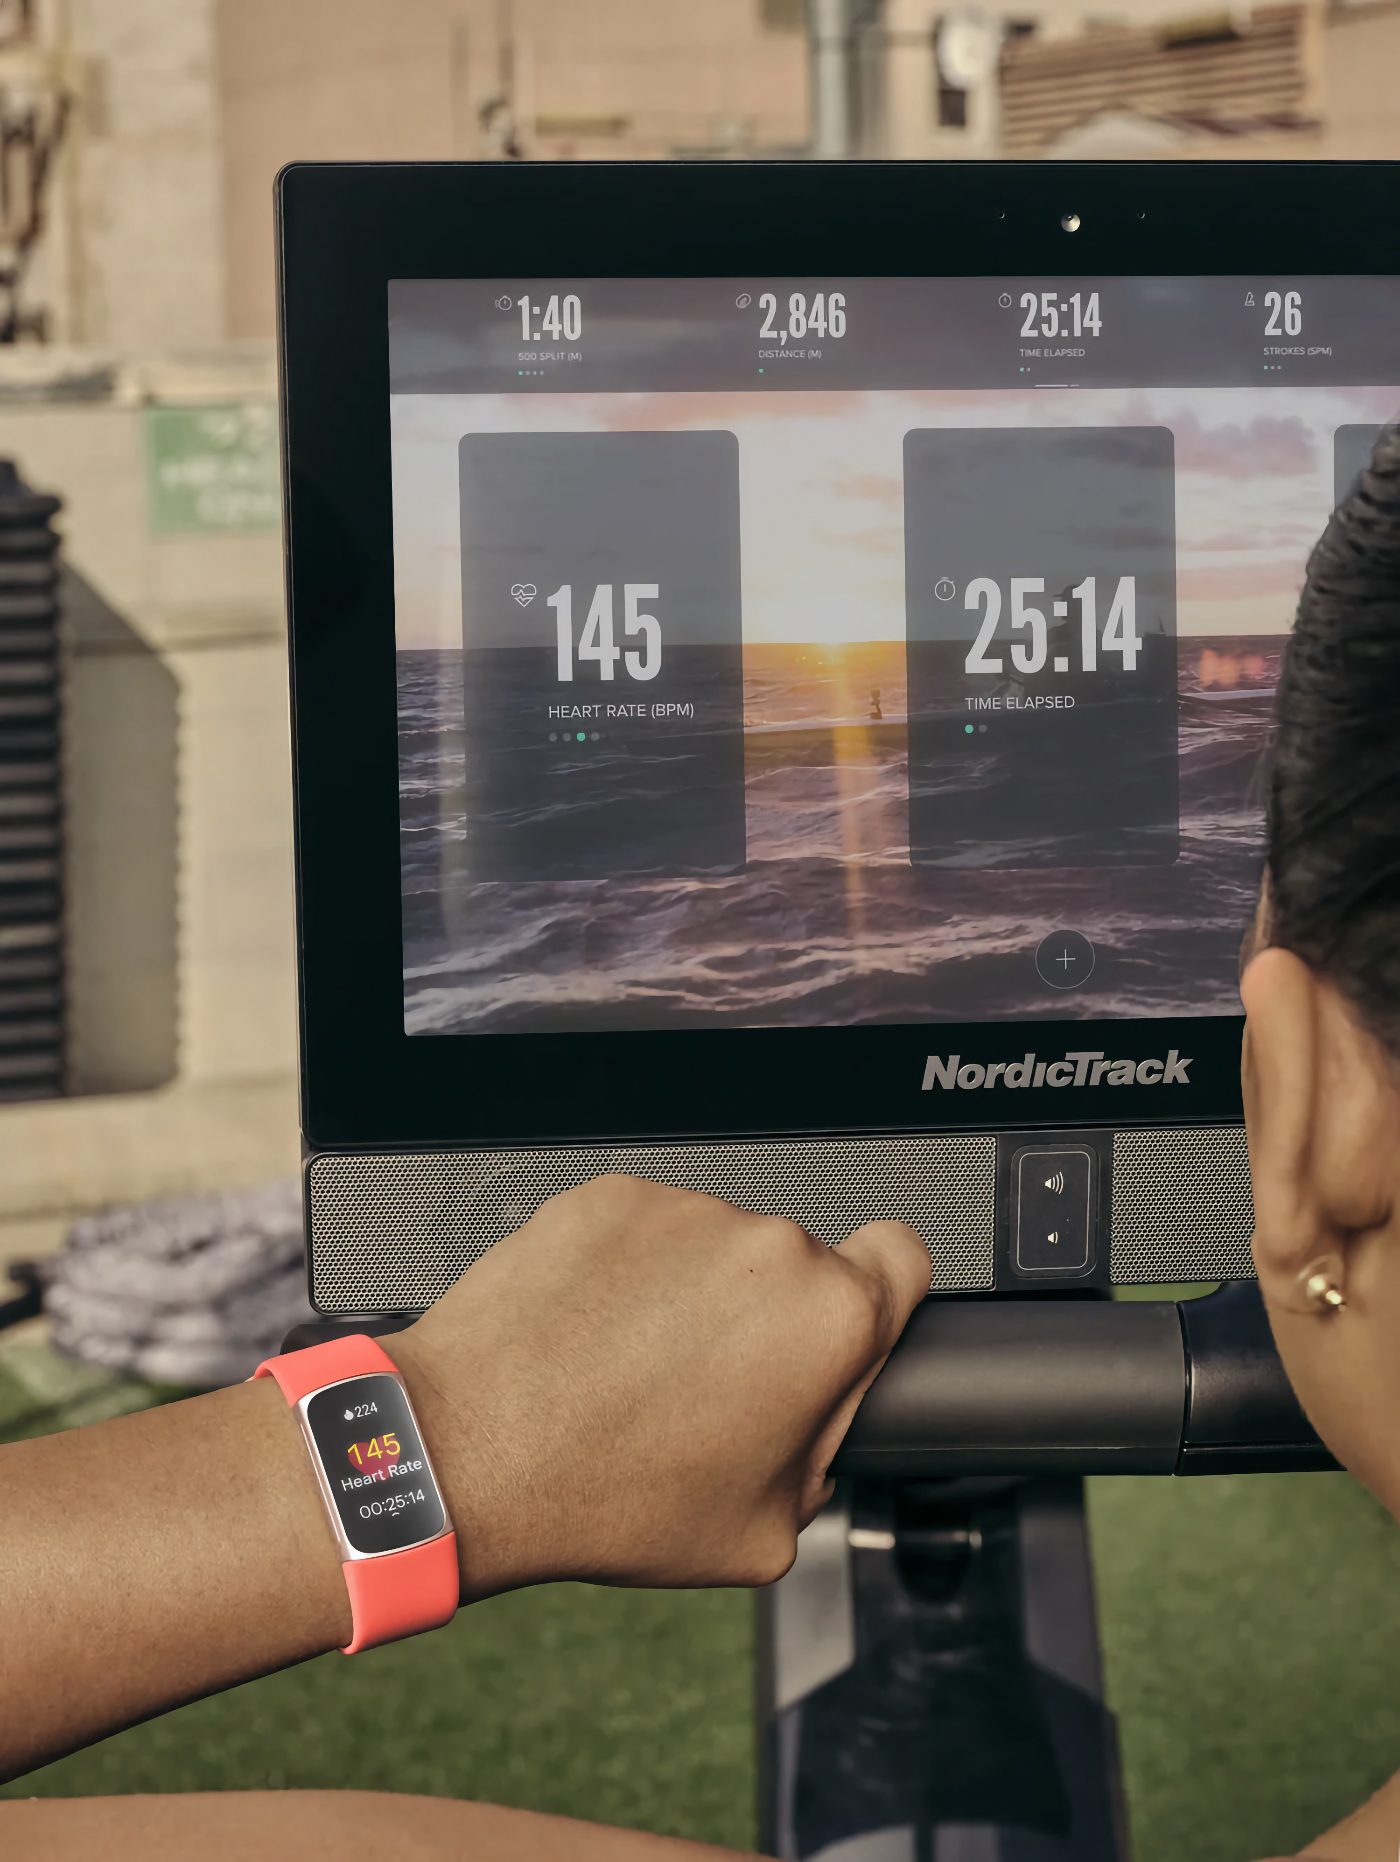 Le Charge 6 de Fitbit a tout d'une montre connectée, en format